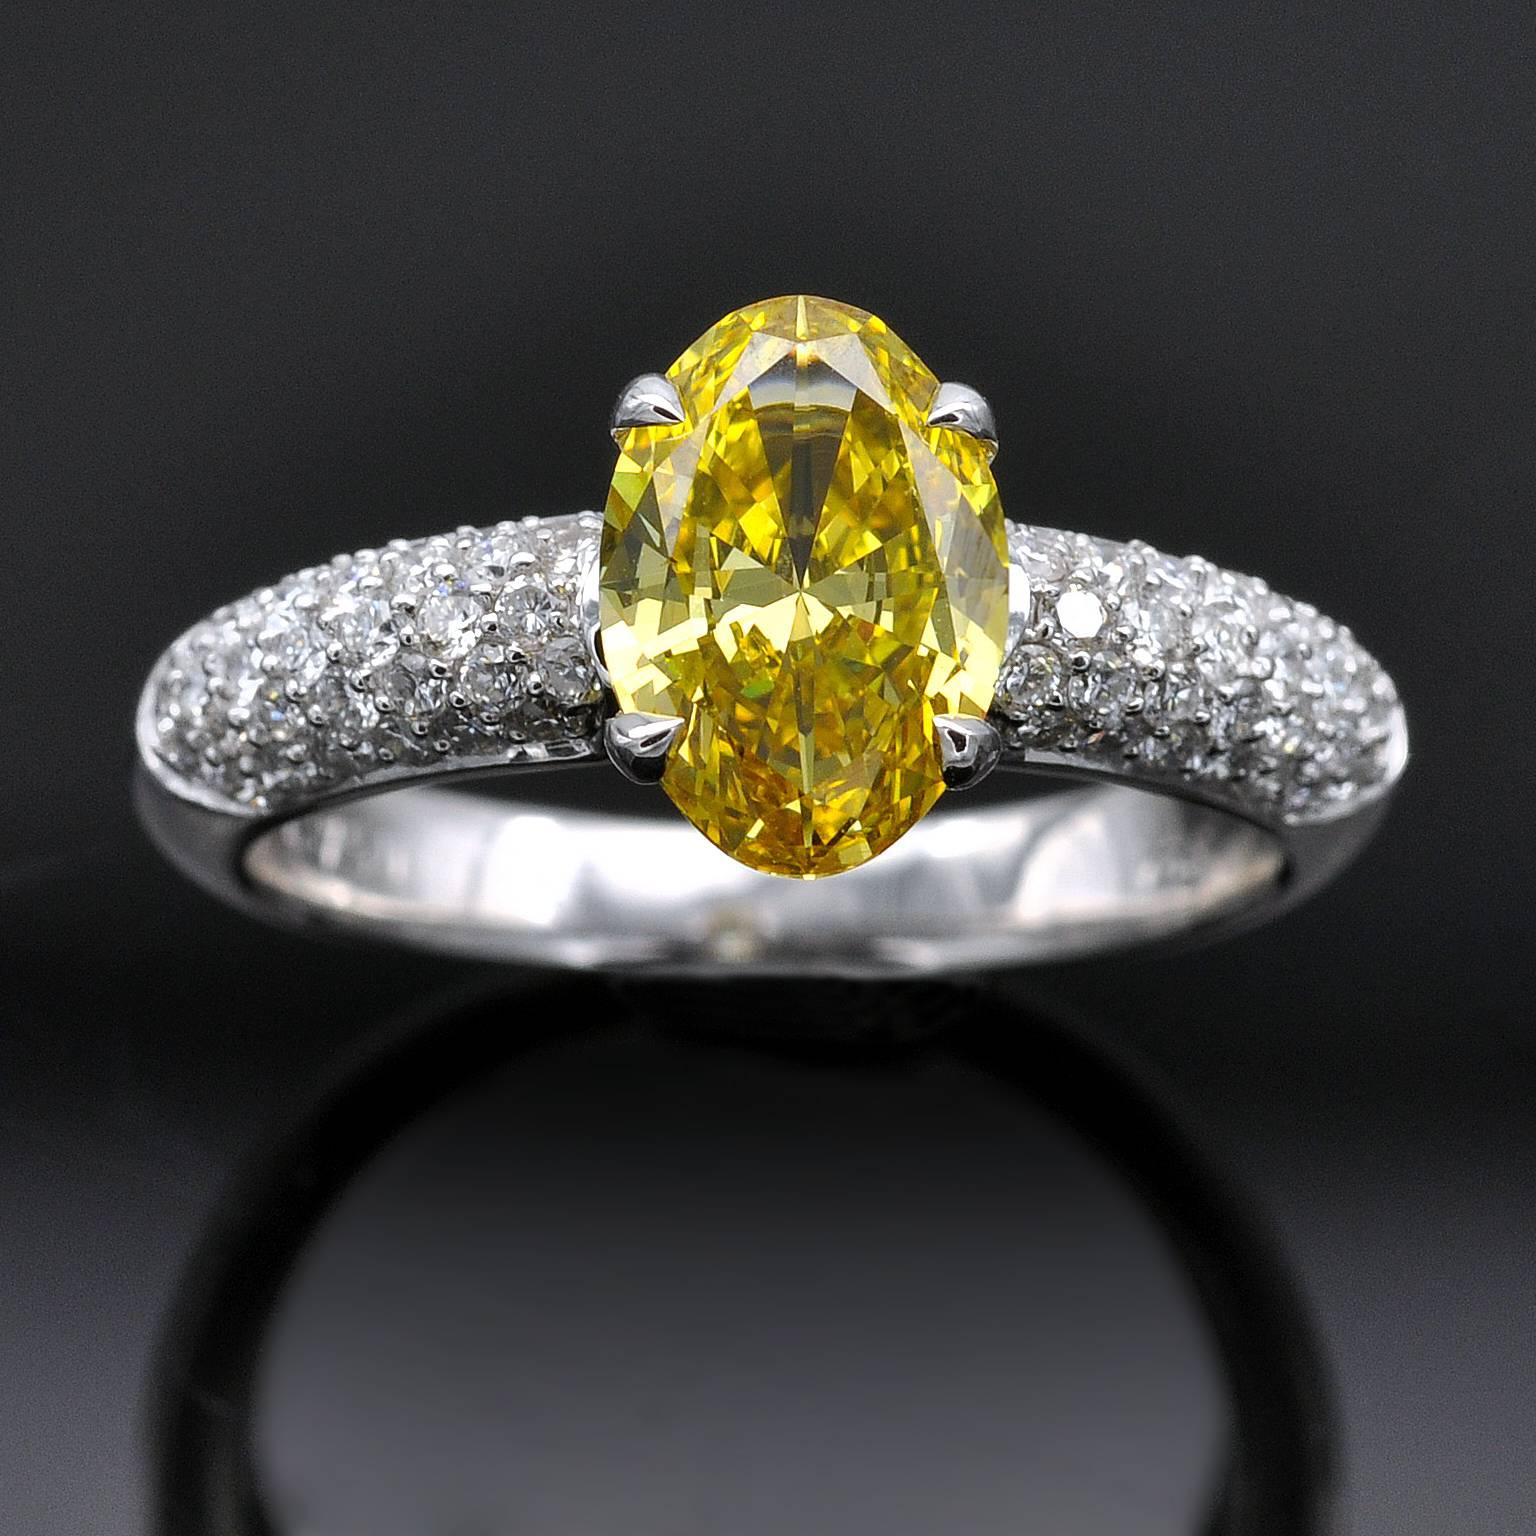 Ein sehr schöner diamantener Verlobungsring. In der Mitte befindet sich ein ovaler, leuchtend gelber Diamant mit einem Gewicht von 1,36 Karat. Seine satte Farbe ist das Wünschenswerteste: lebendig in Ton und Farbe (nicht tief oder dunkel, nur